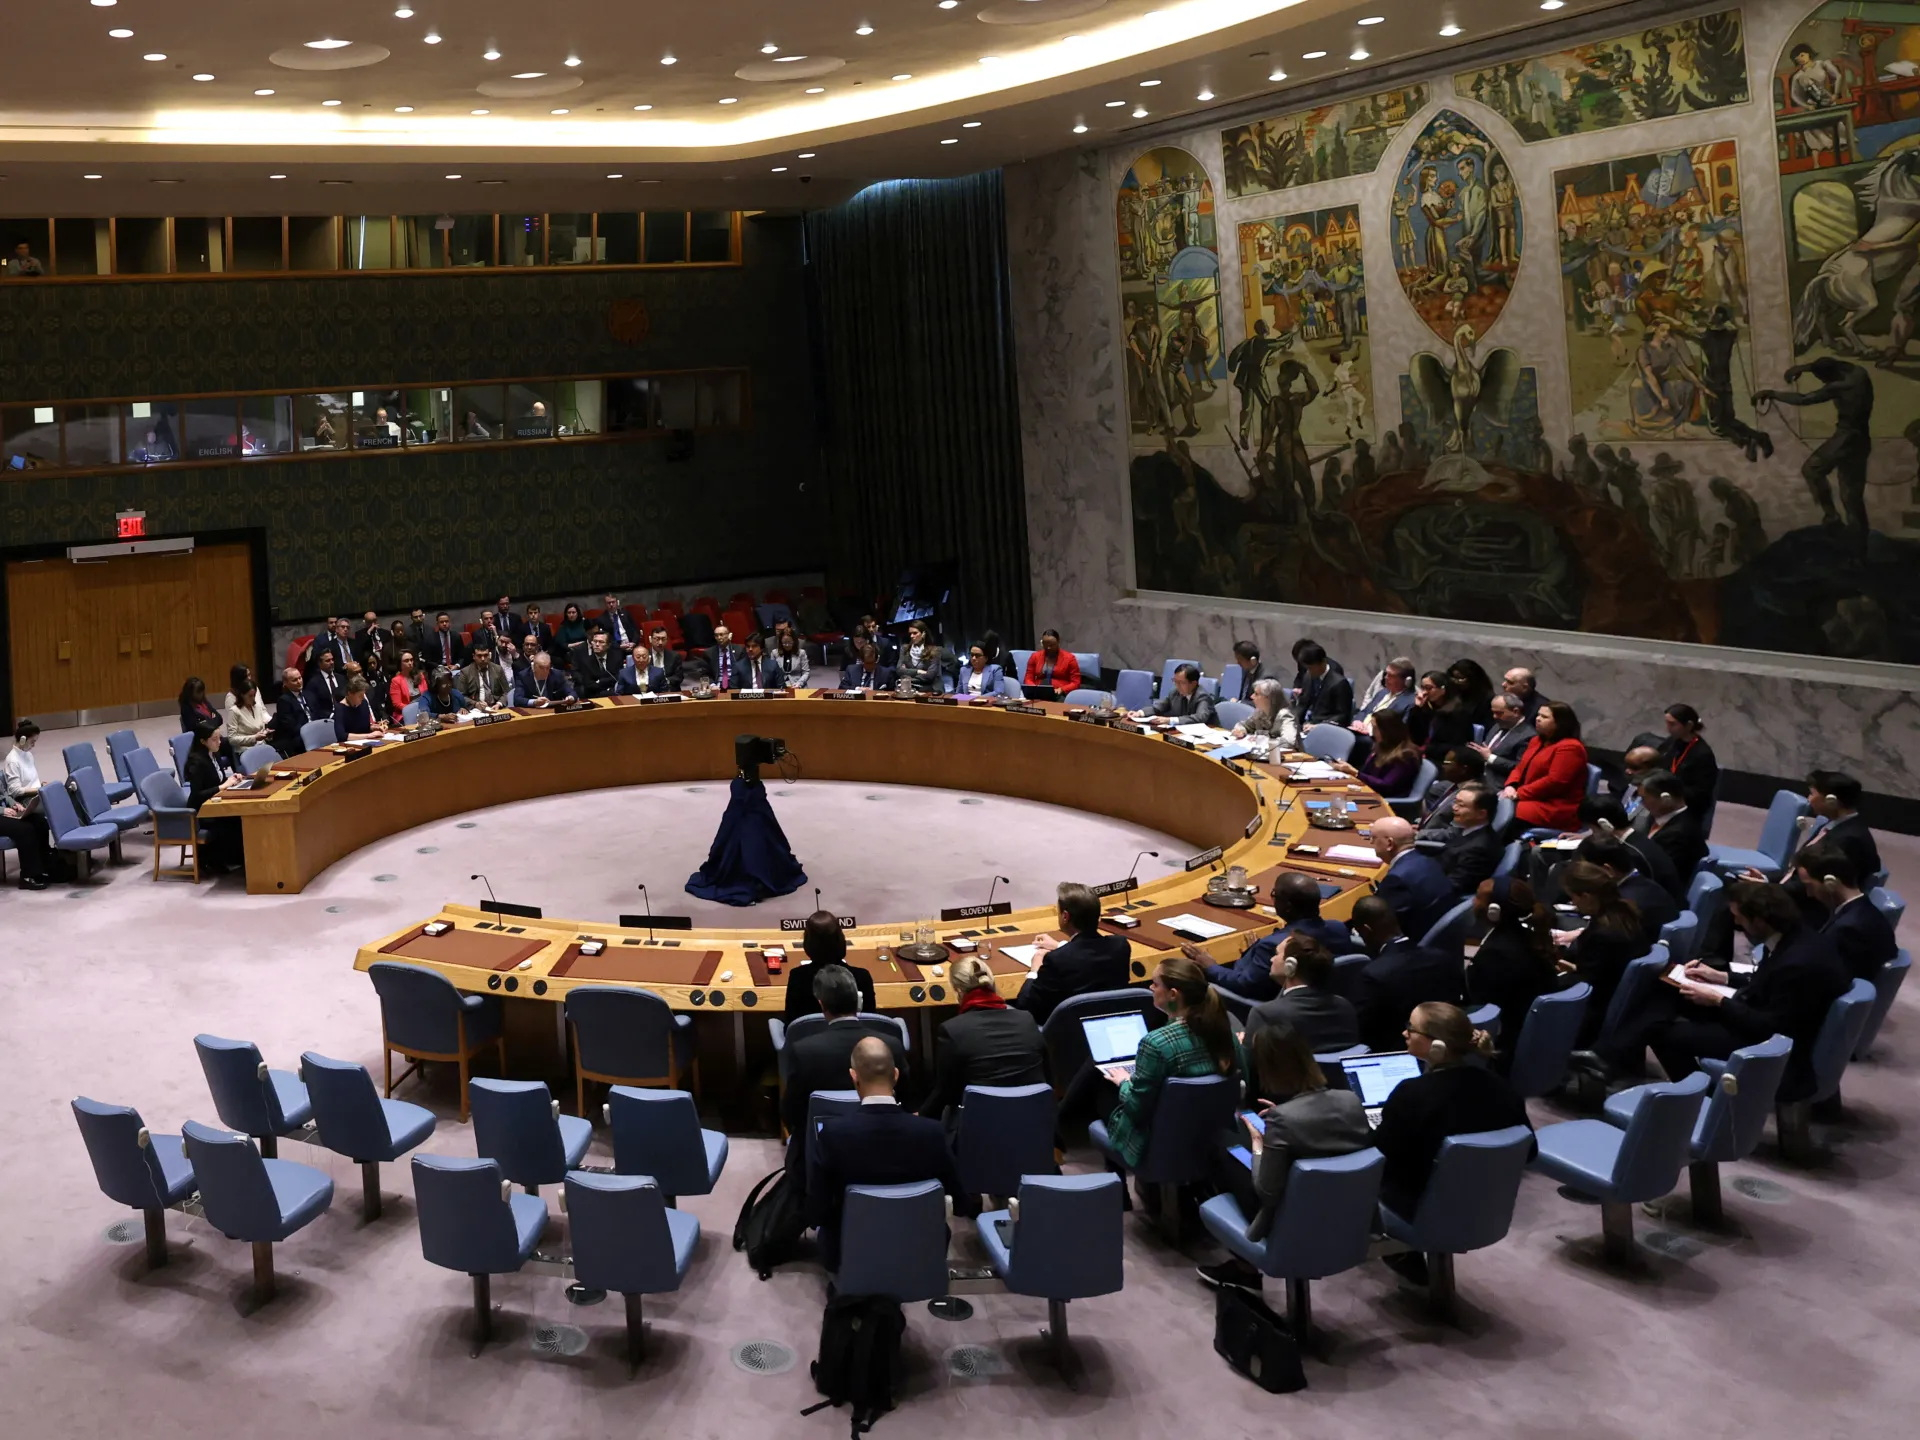 Cuộc họp của Hội đồng Bảo an Liên hợp quốc tại New York vào thứ Sáu (22/3). Ảnh: Reuters

